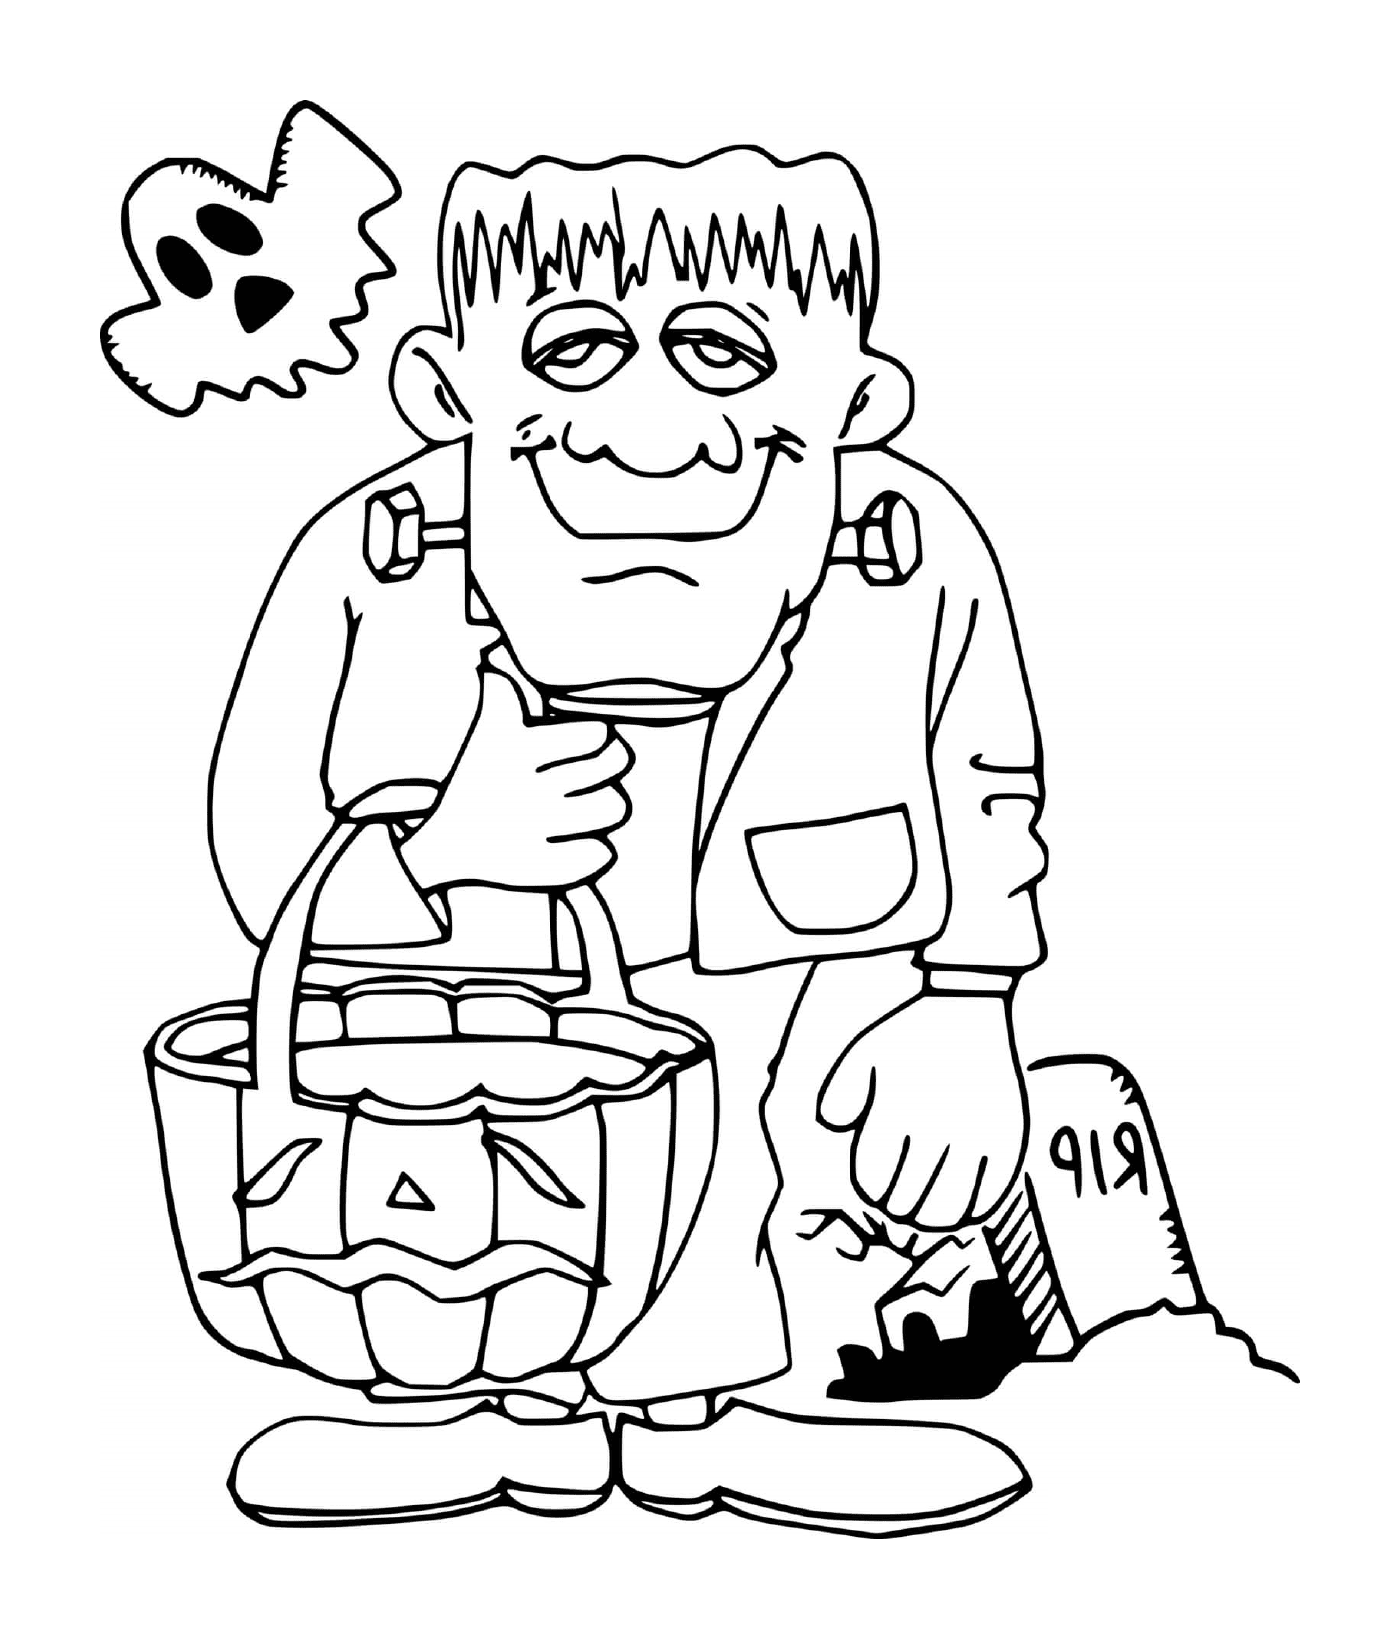  Frankenstein com um fantasma 